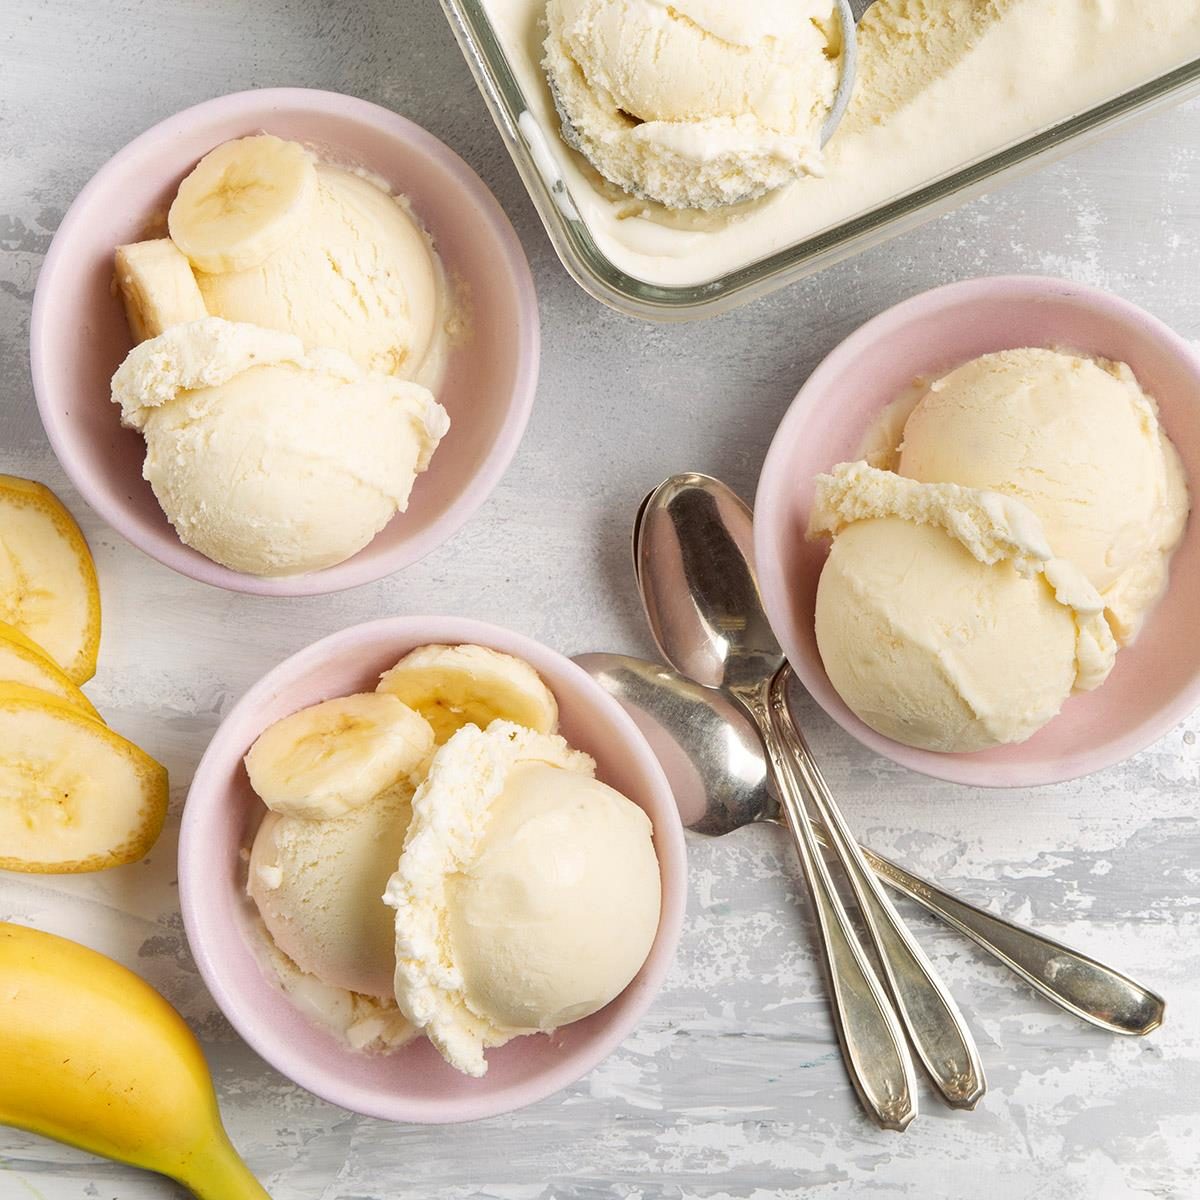 Best Banana Ice Cream Recipe: How to Make It